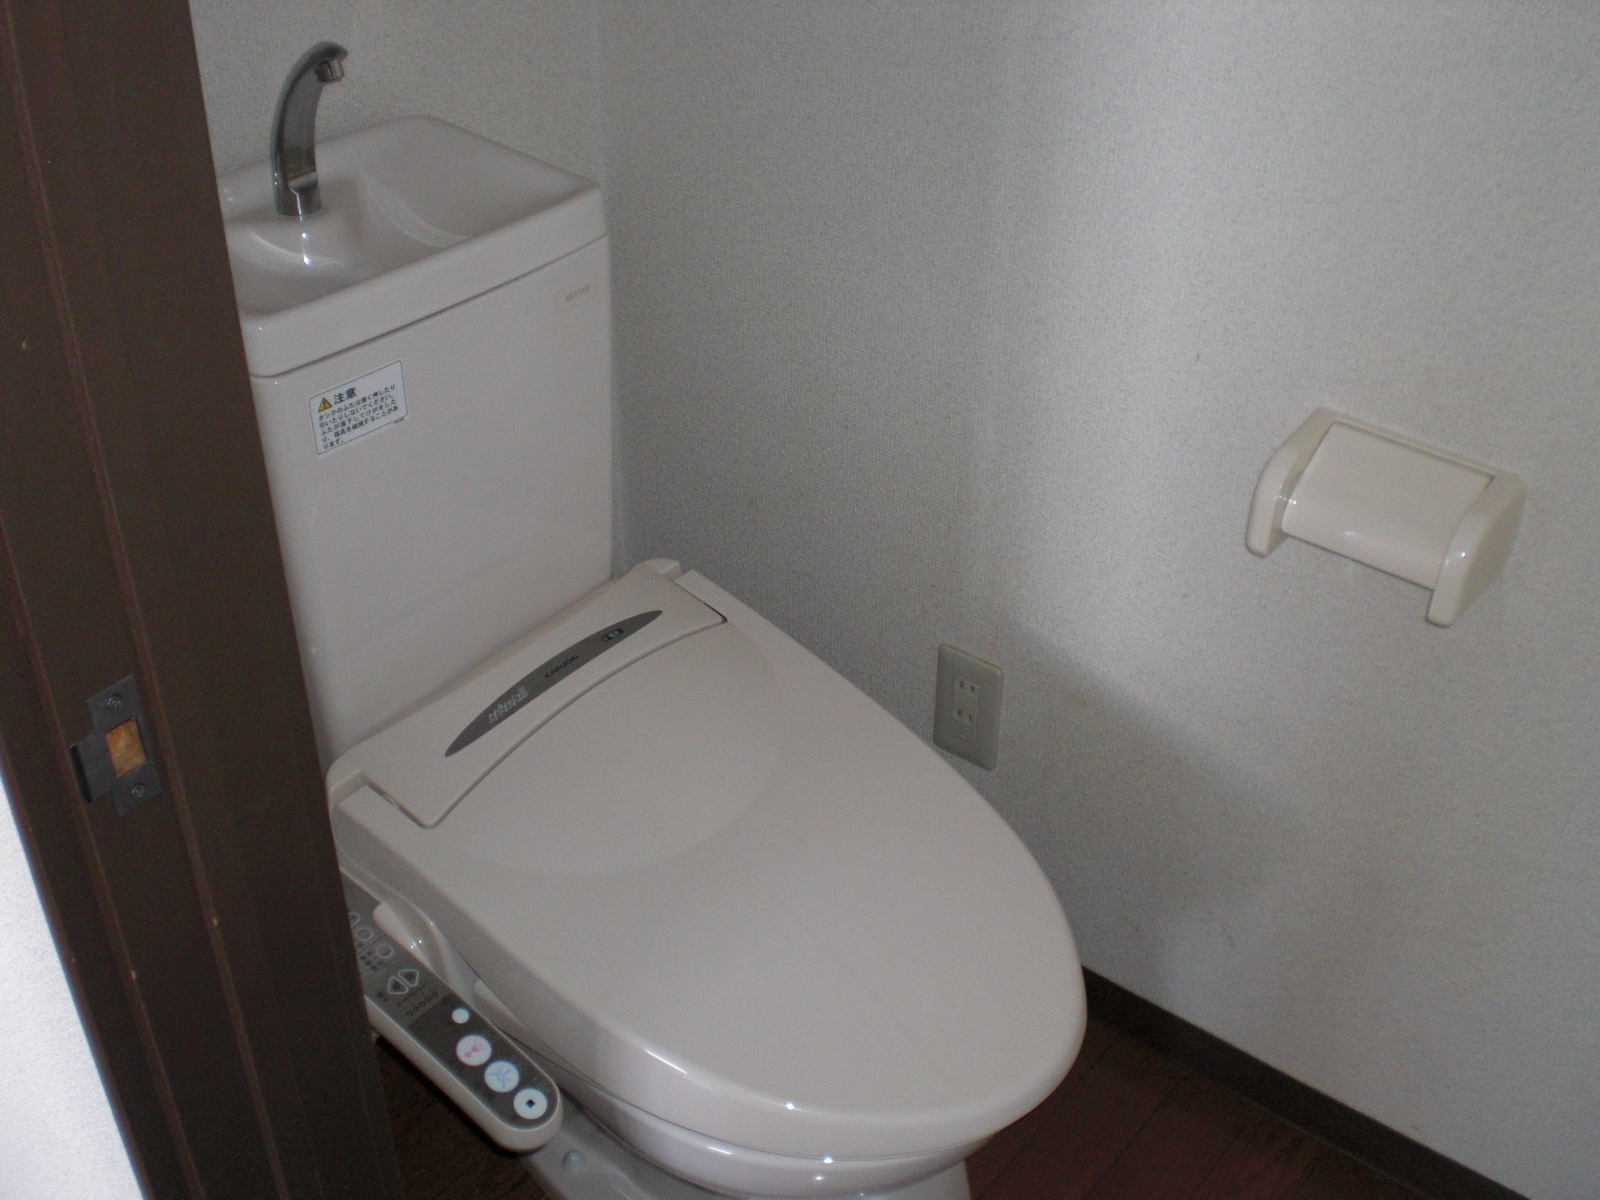 Toilet. Flush toilet with a warm water washing toilet seat